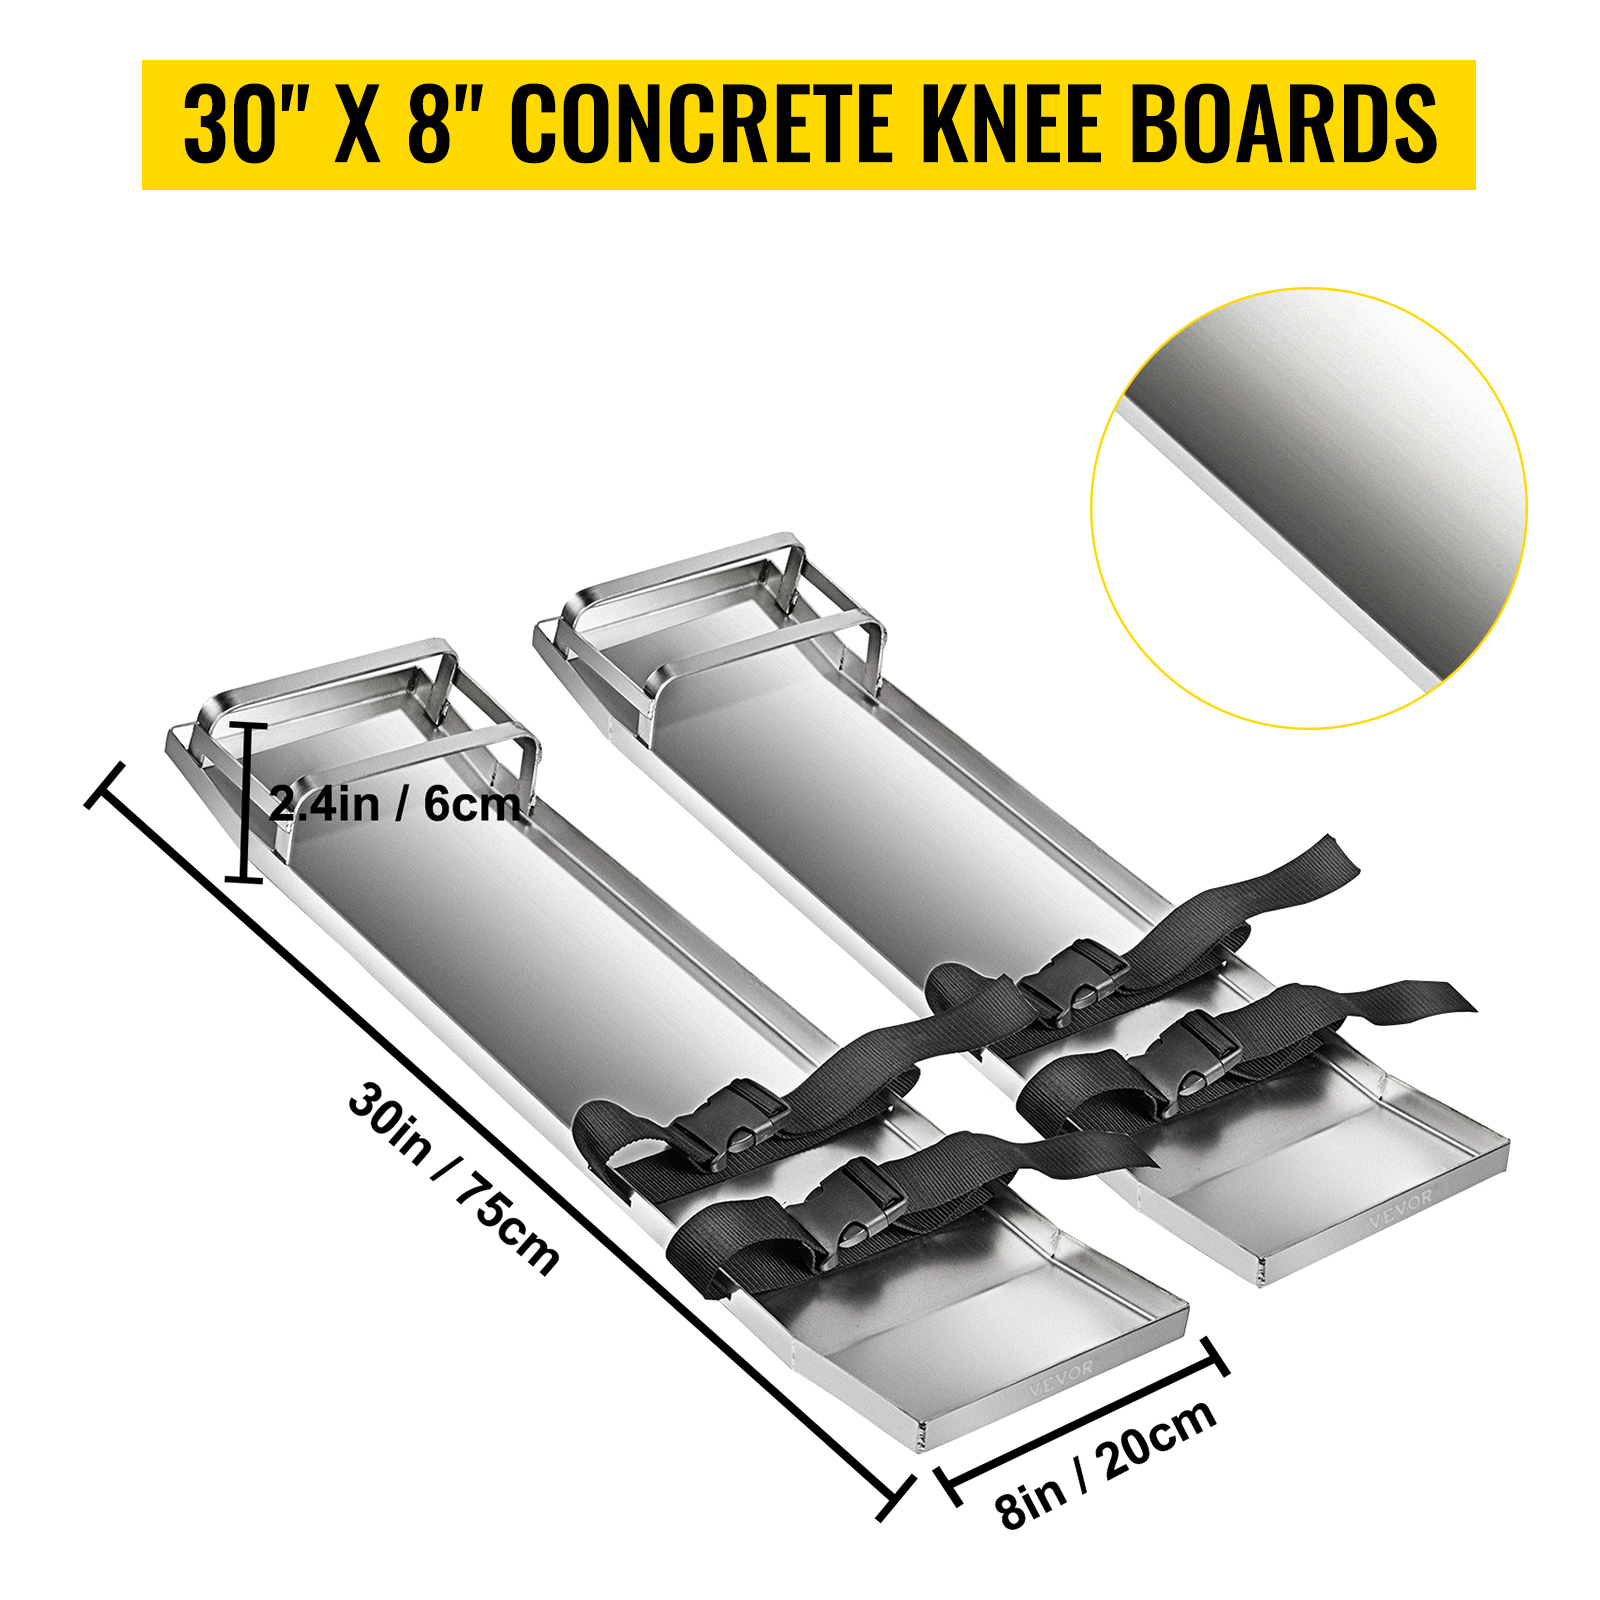 VEVOR Concrete Knee Boards Slider Knee Boards 28 x 8 Kneeler Board  Stainless Steel Kneedboards Concrete Sliders Pair Moving Sliders W /  Concrete Knee Pads & Board Straps for Concrete Finishing 